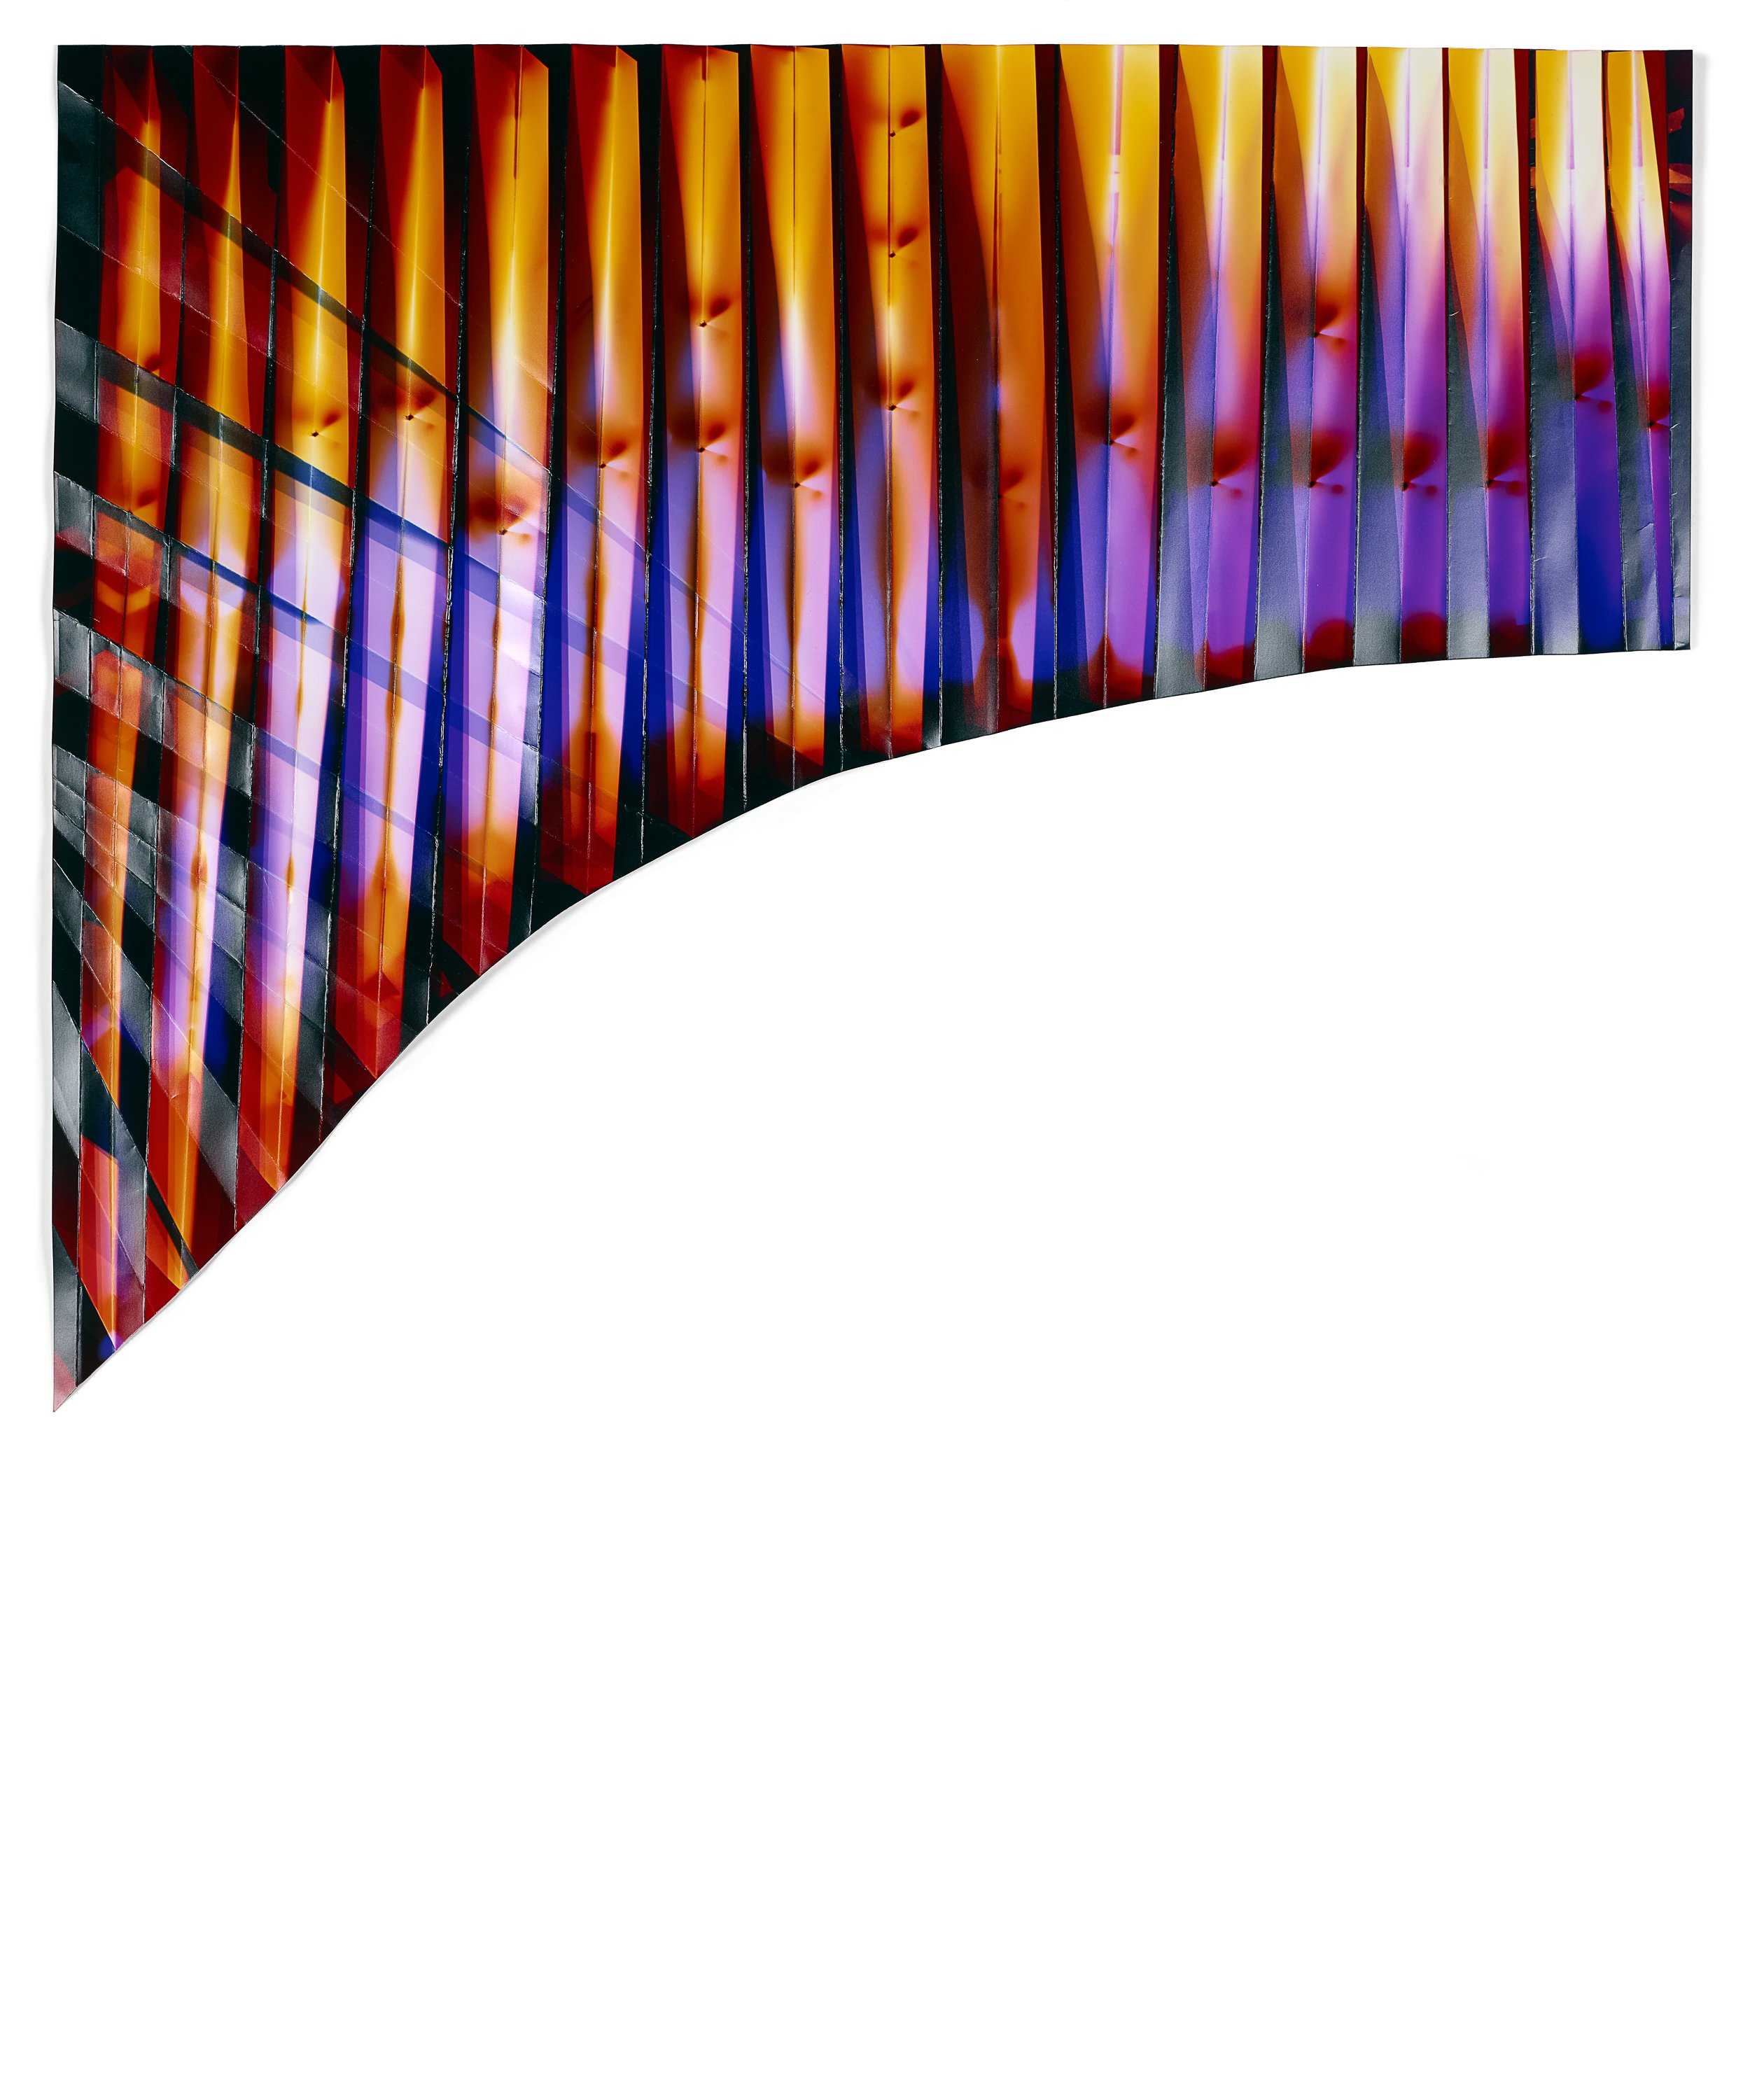   Volcanic Light 3,  2014  Folded chromogenic photogram  27 x 32 in 